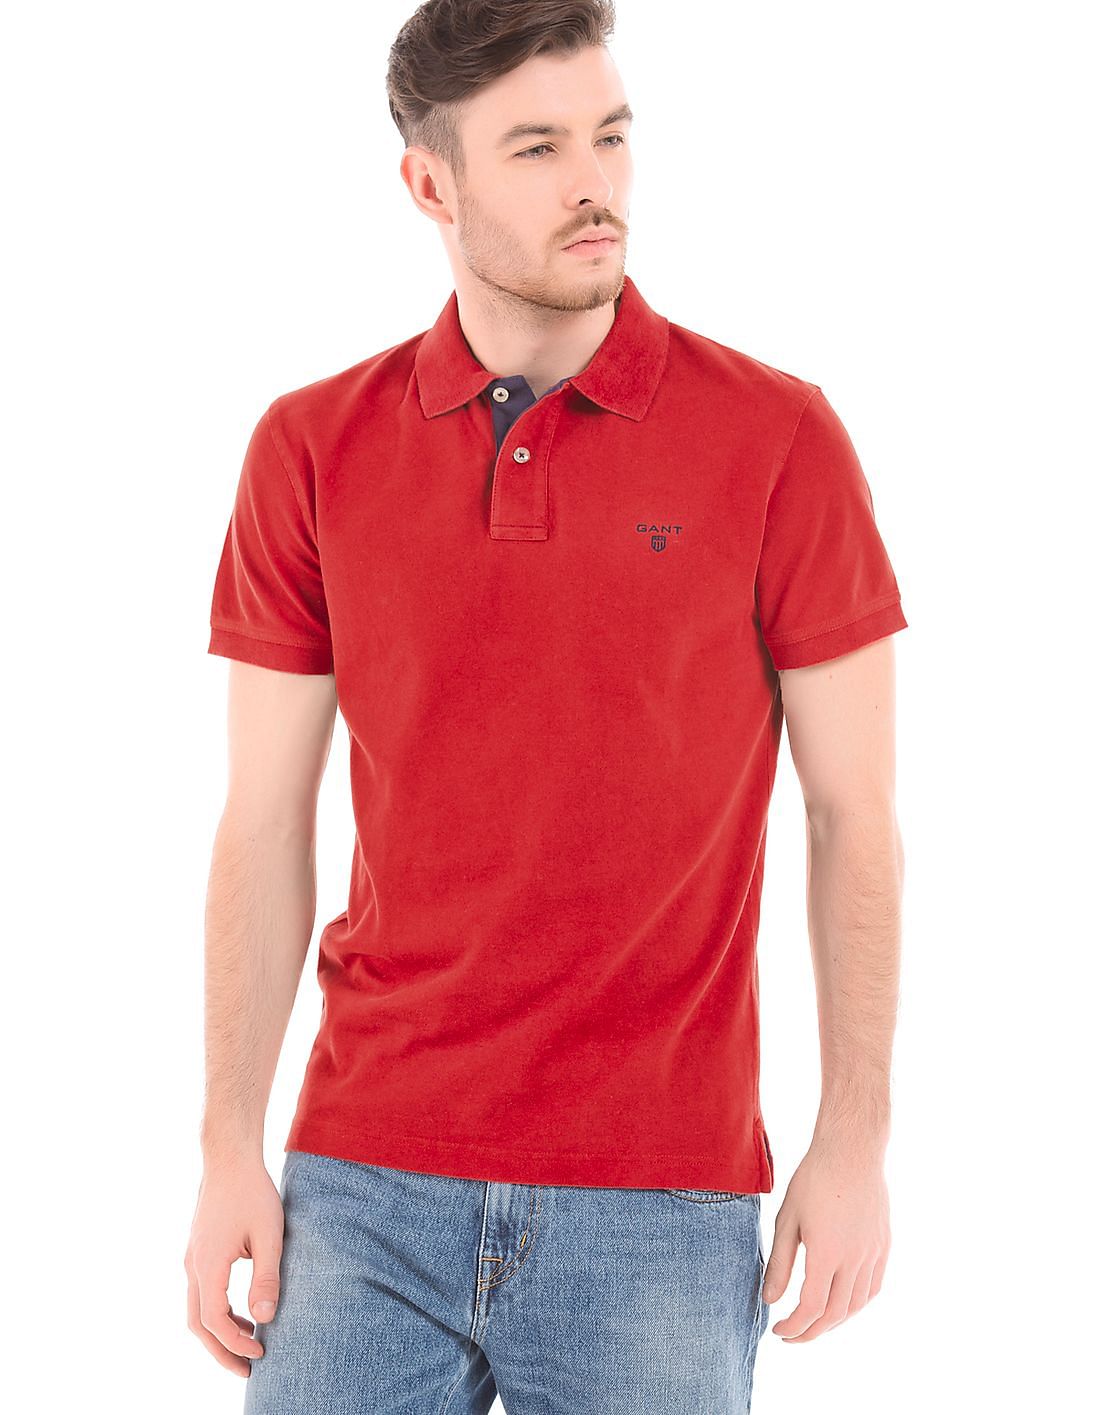 Buy Gant Men Contrast Placket Pique Polo Shirt - NNNOW.com